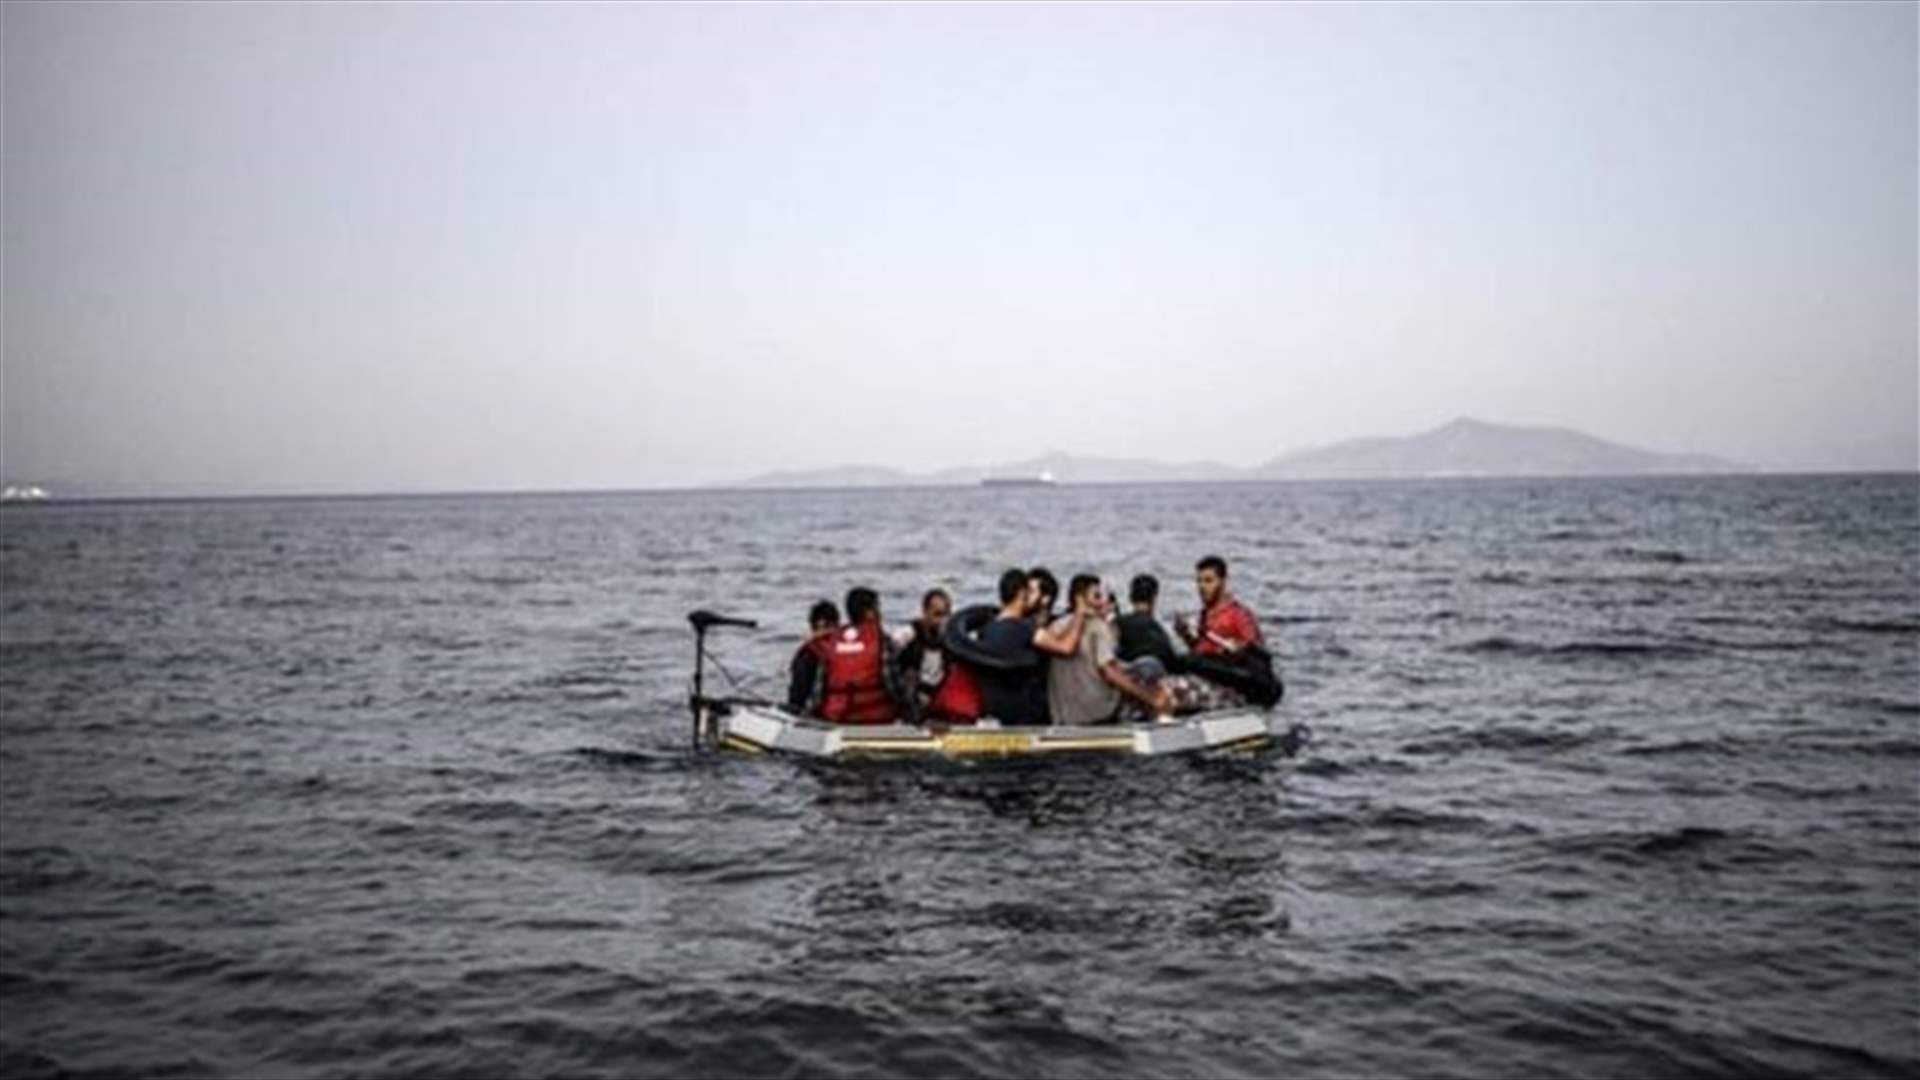 ناجون يتحدثون عن غرق عشرات المهاجرين في مياه المتوسط